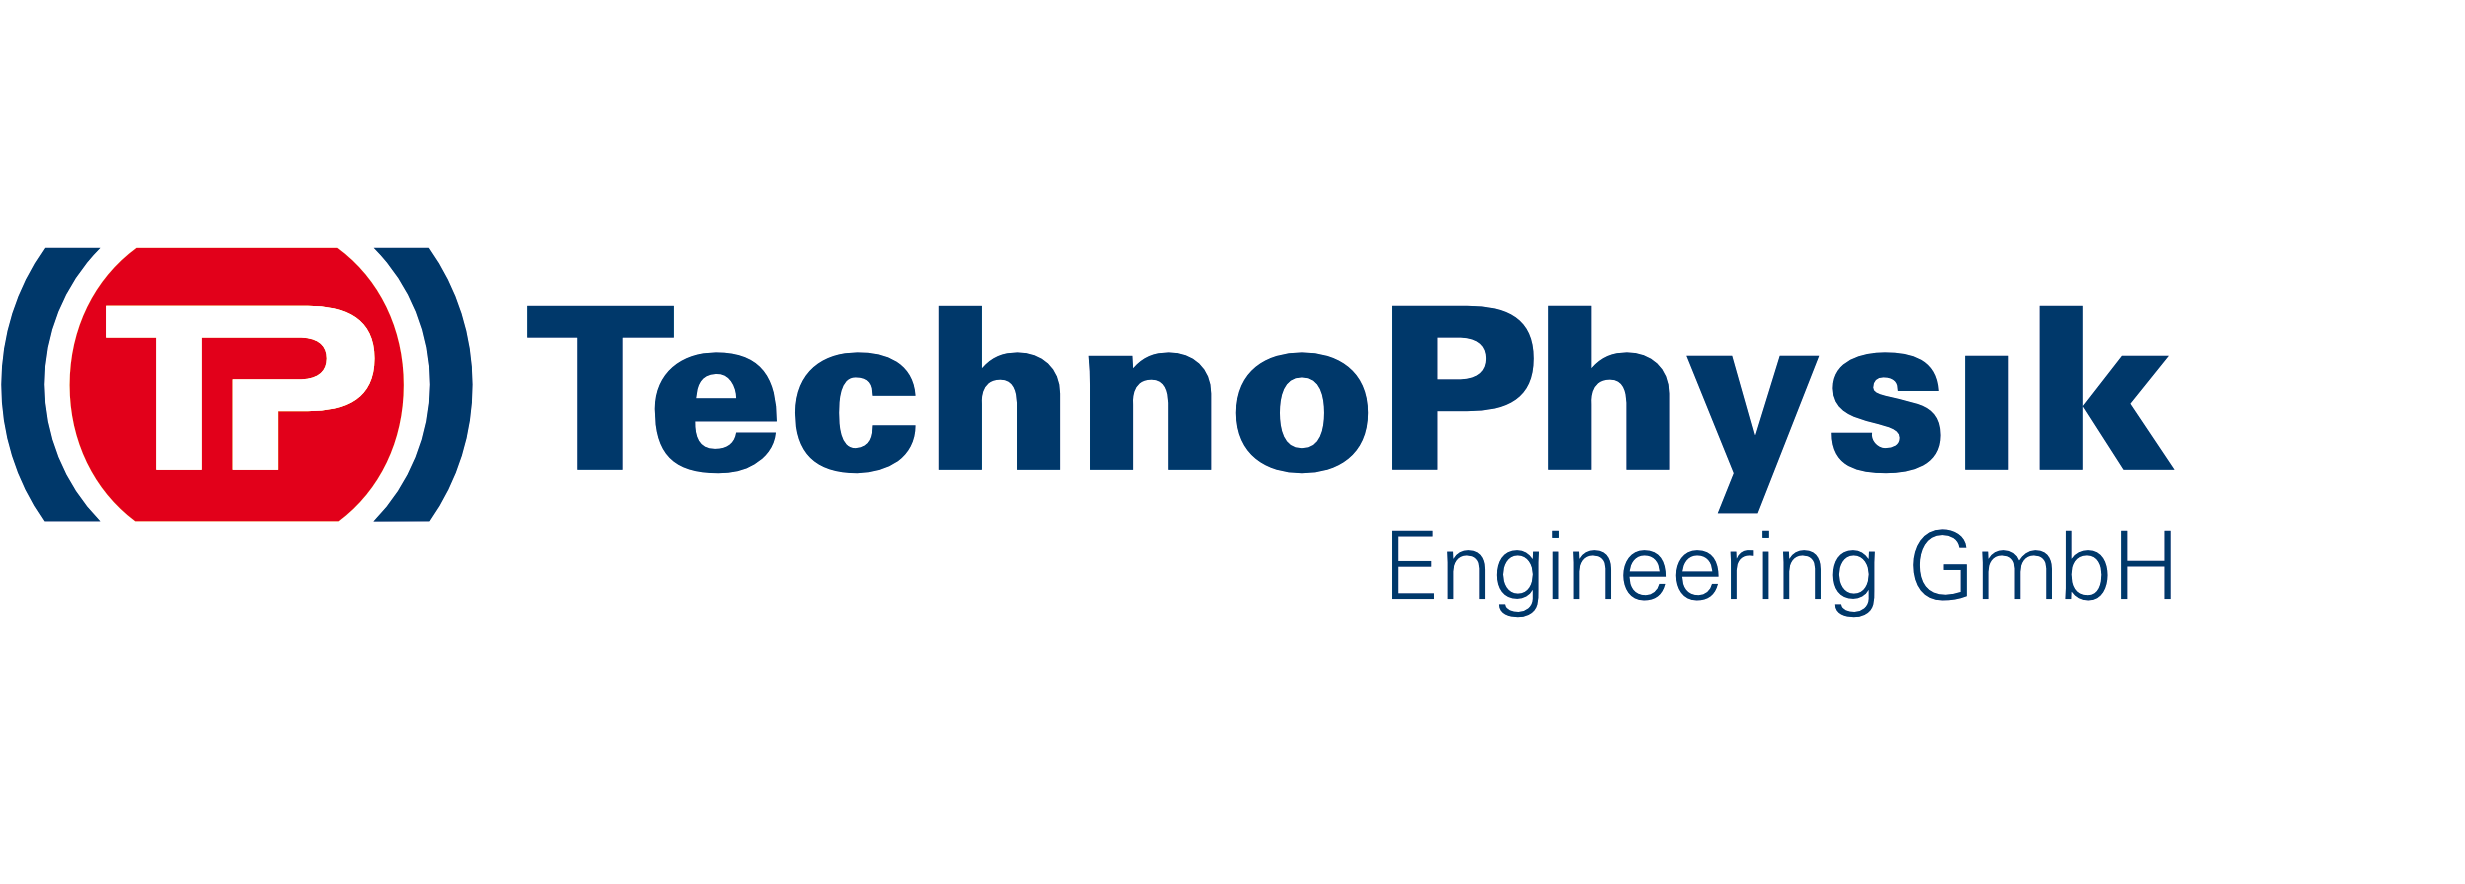 TechnoPhysik Engineering GmbH